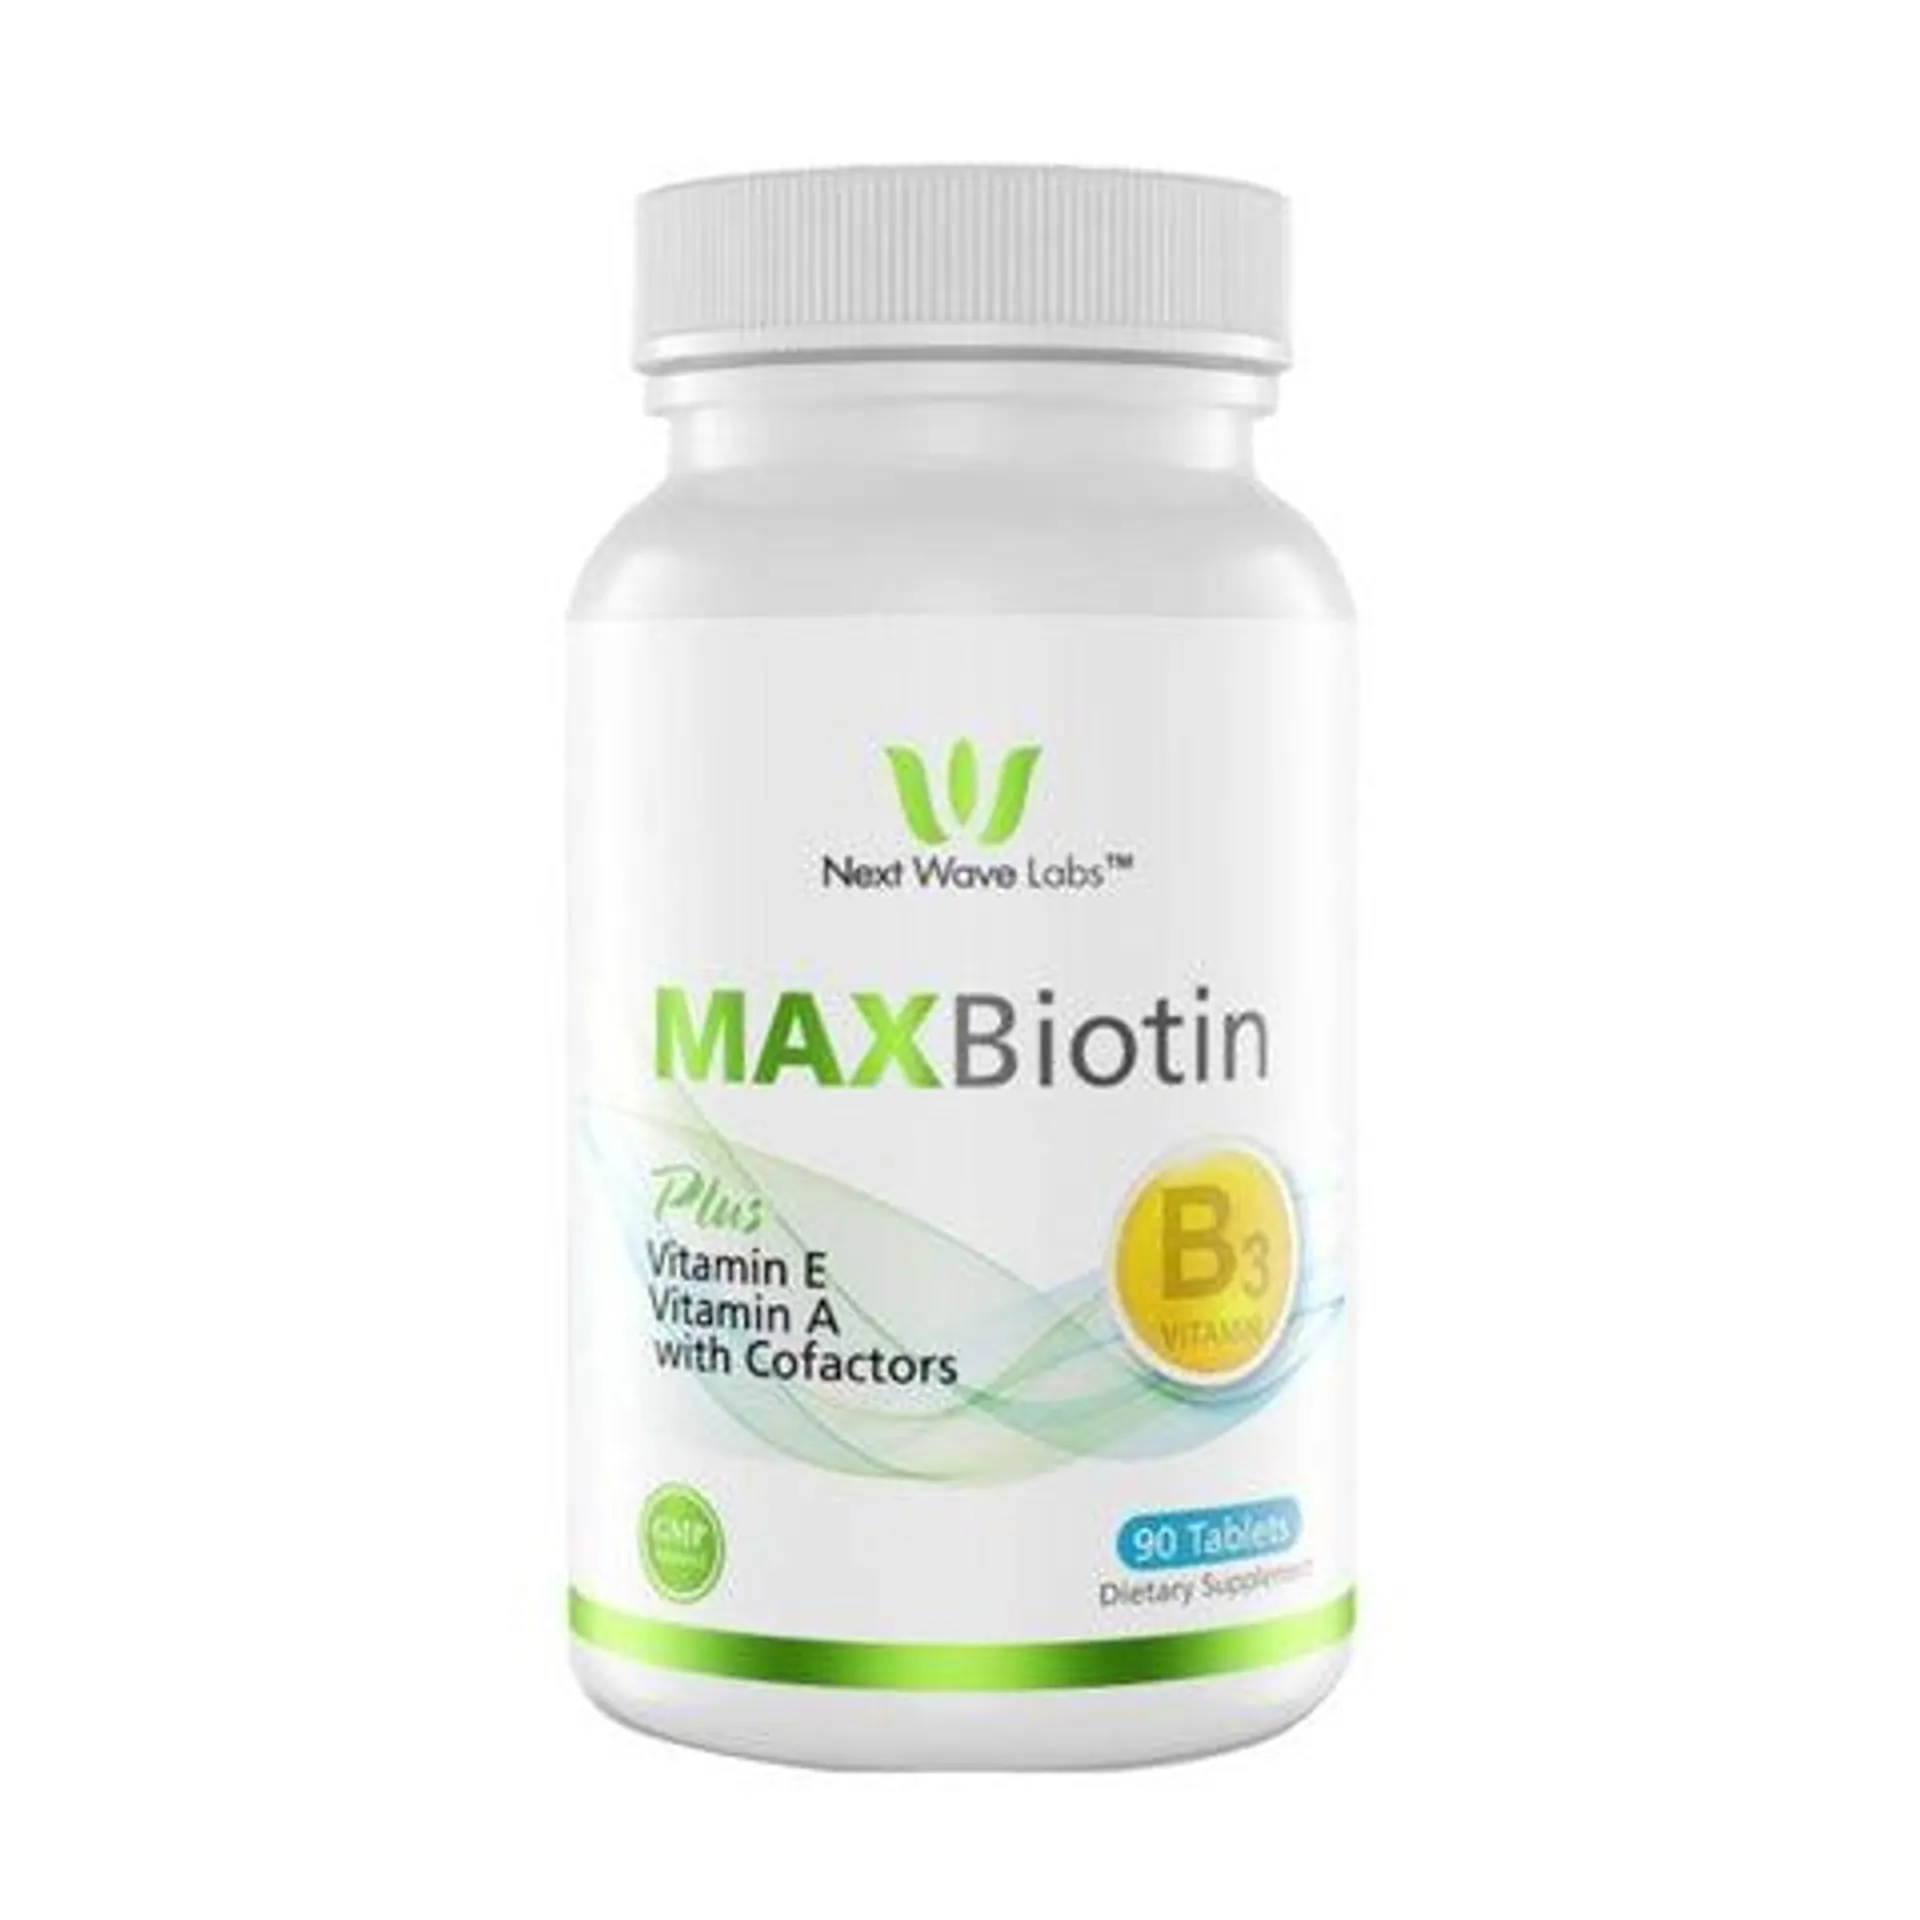 Max Biotin Plus x 90 tabletas